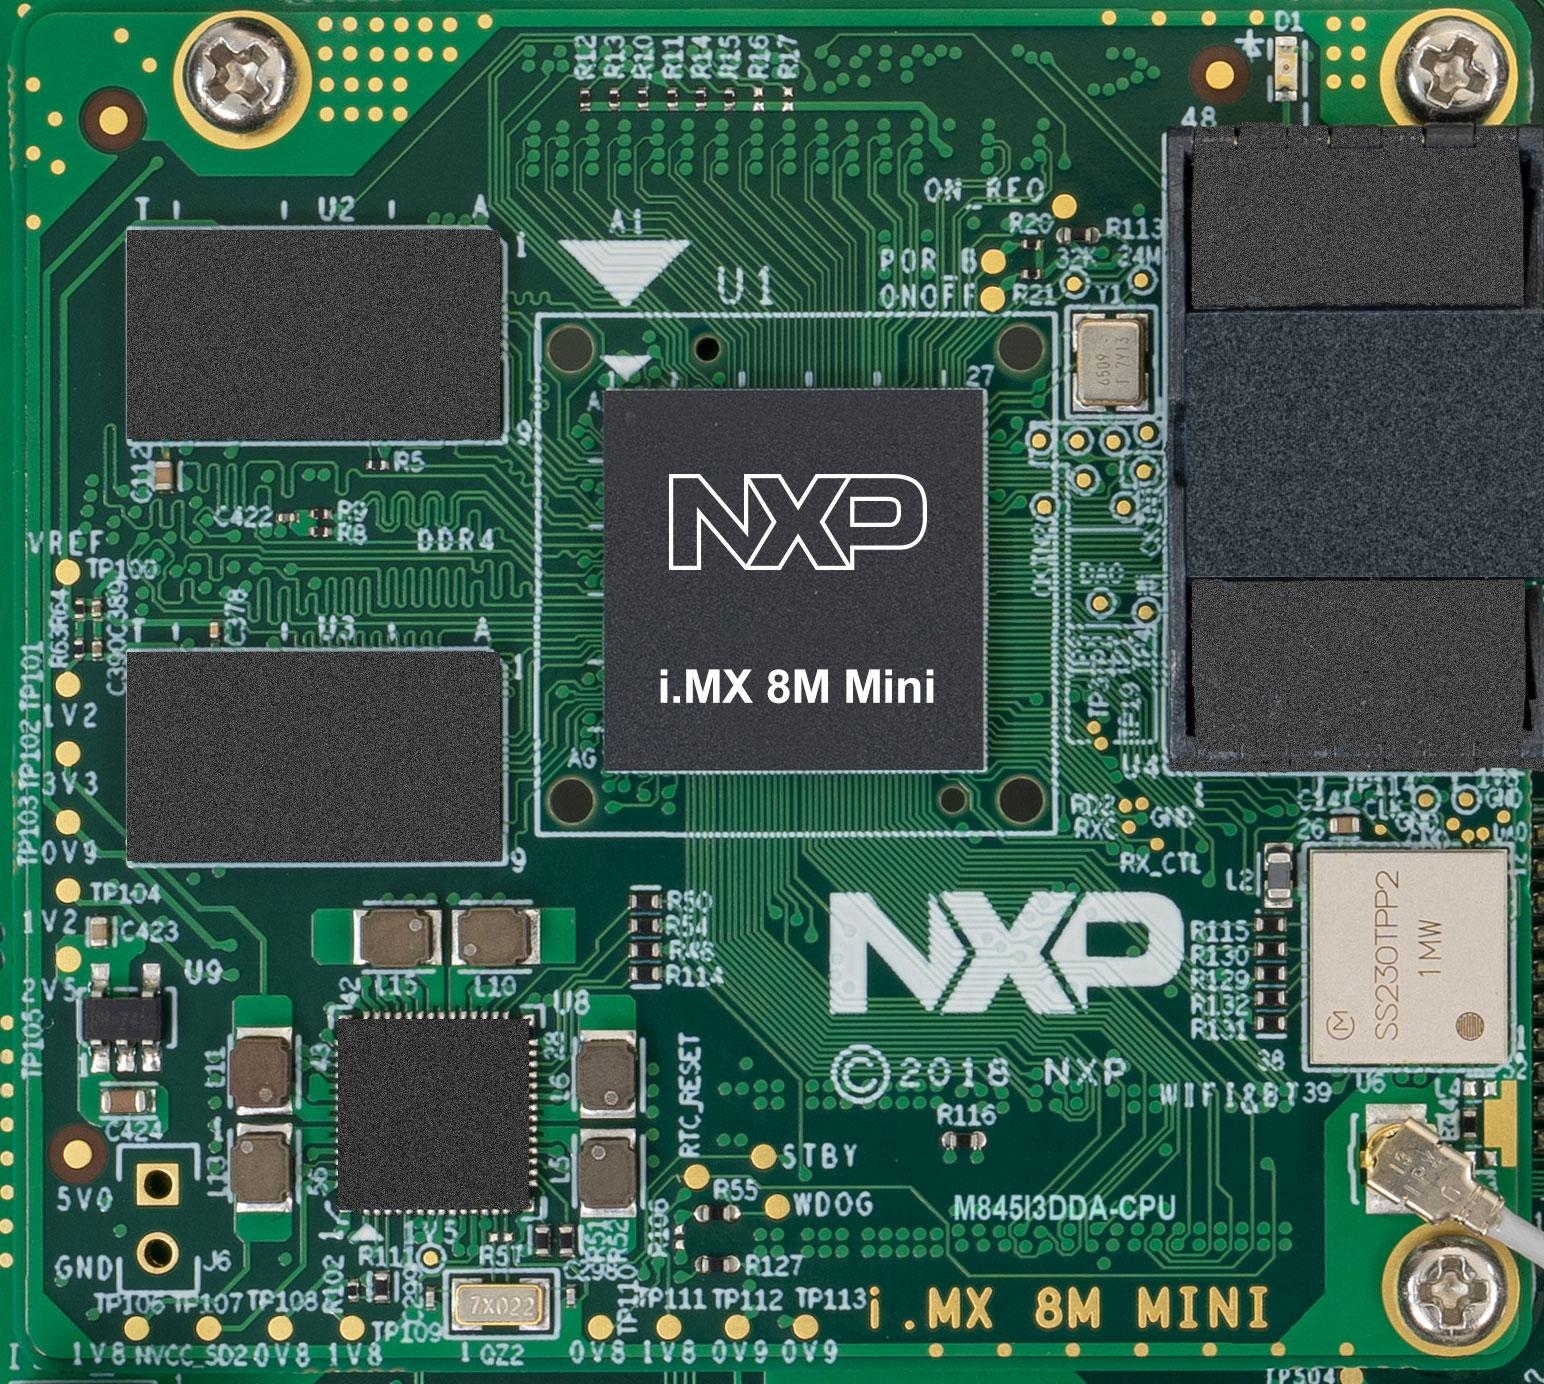 M845I3DDA-CPU